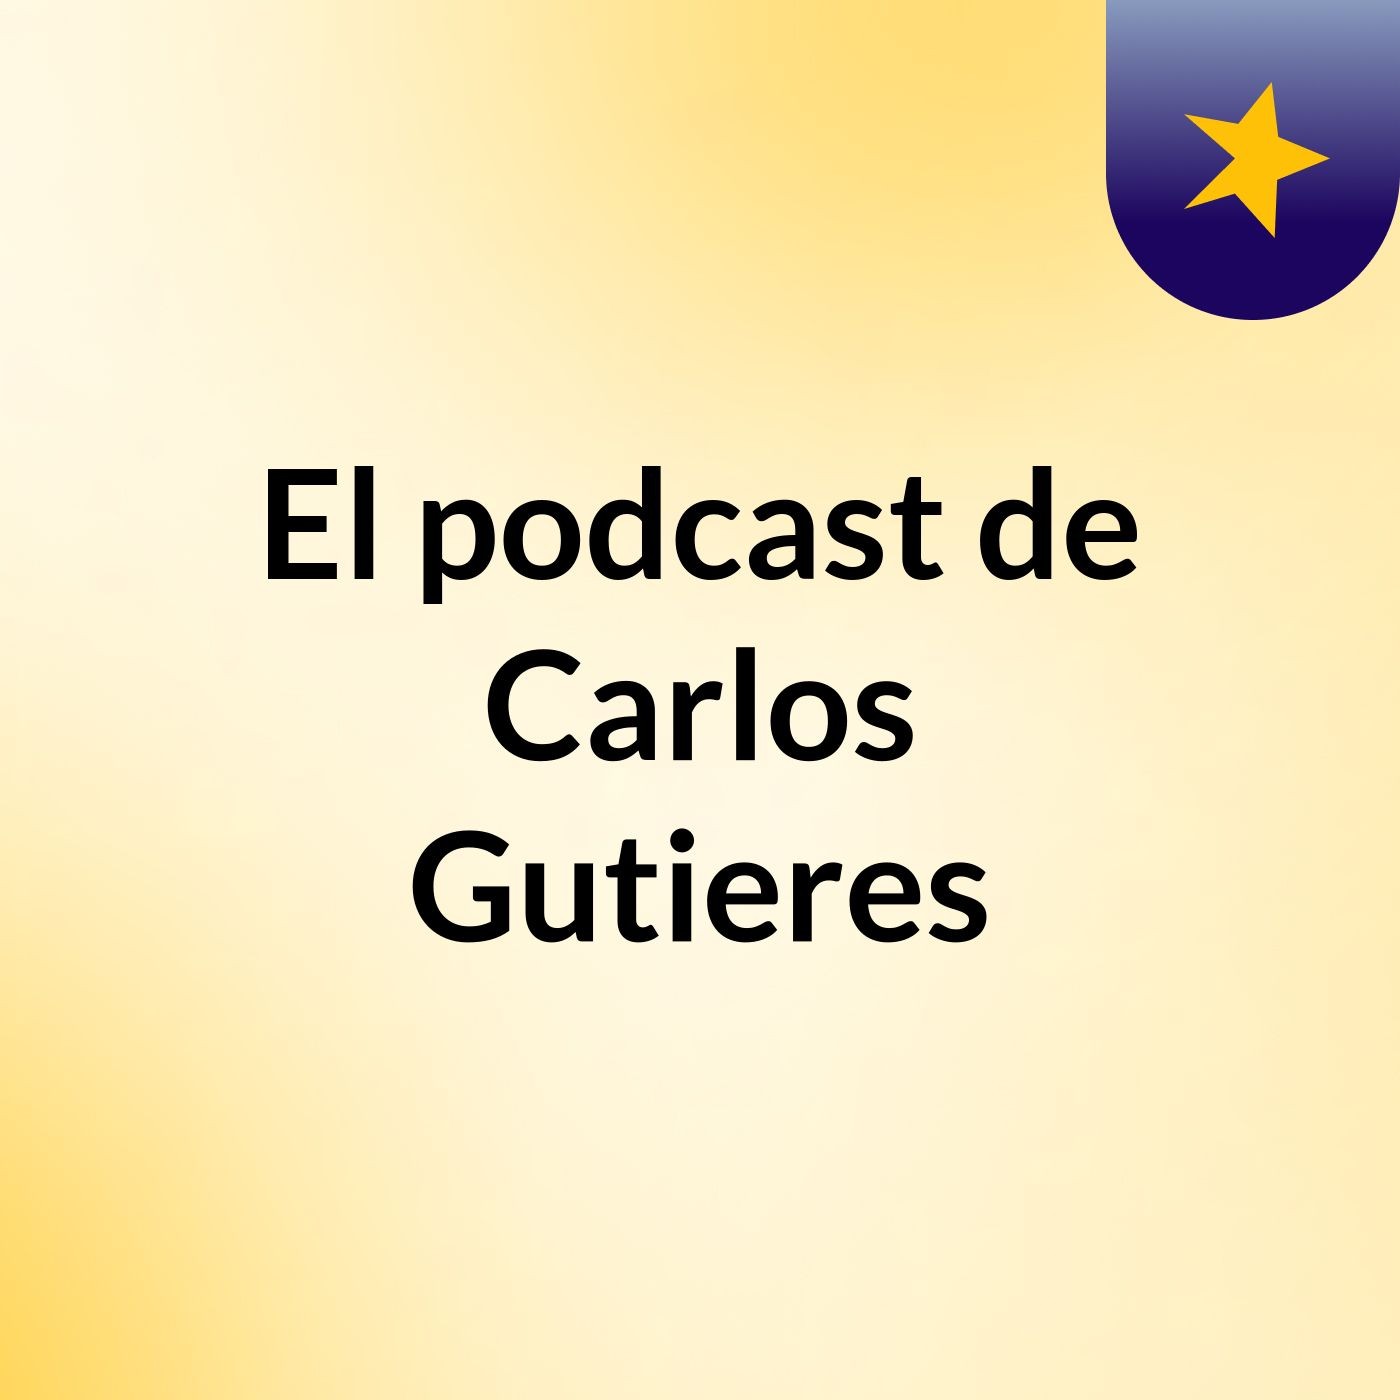 El podcast de Carlos Gutieres